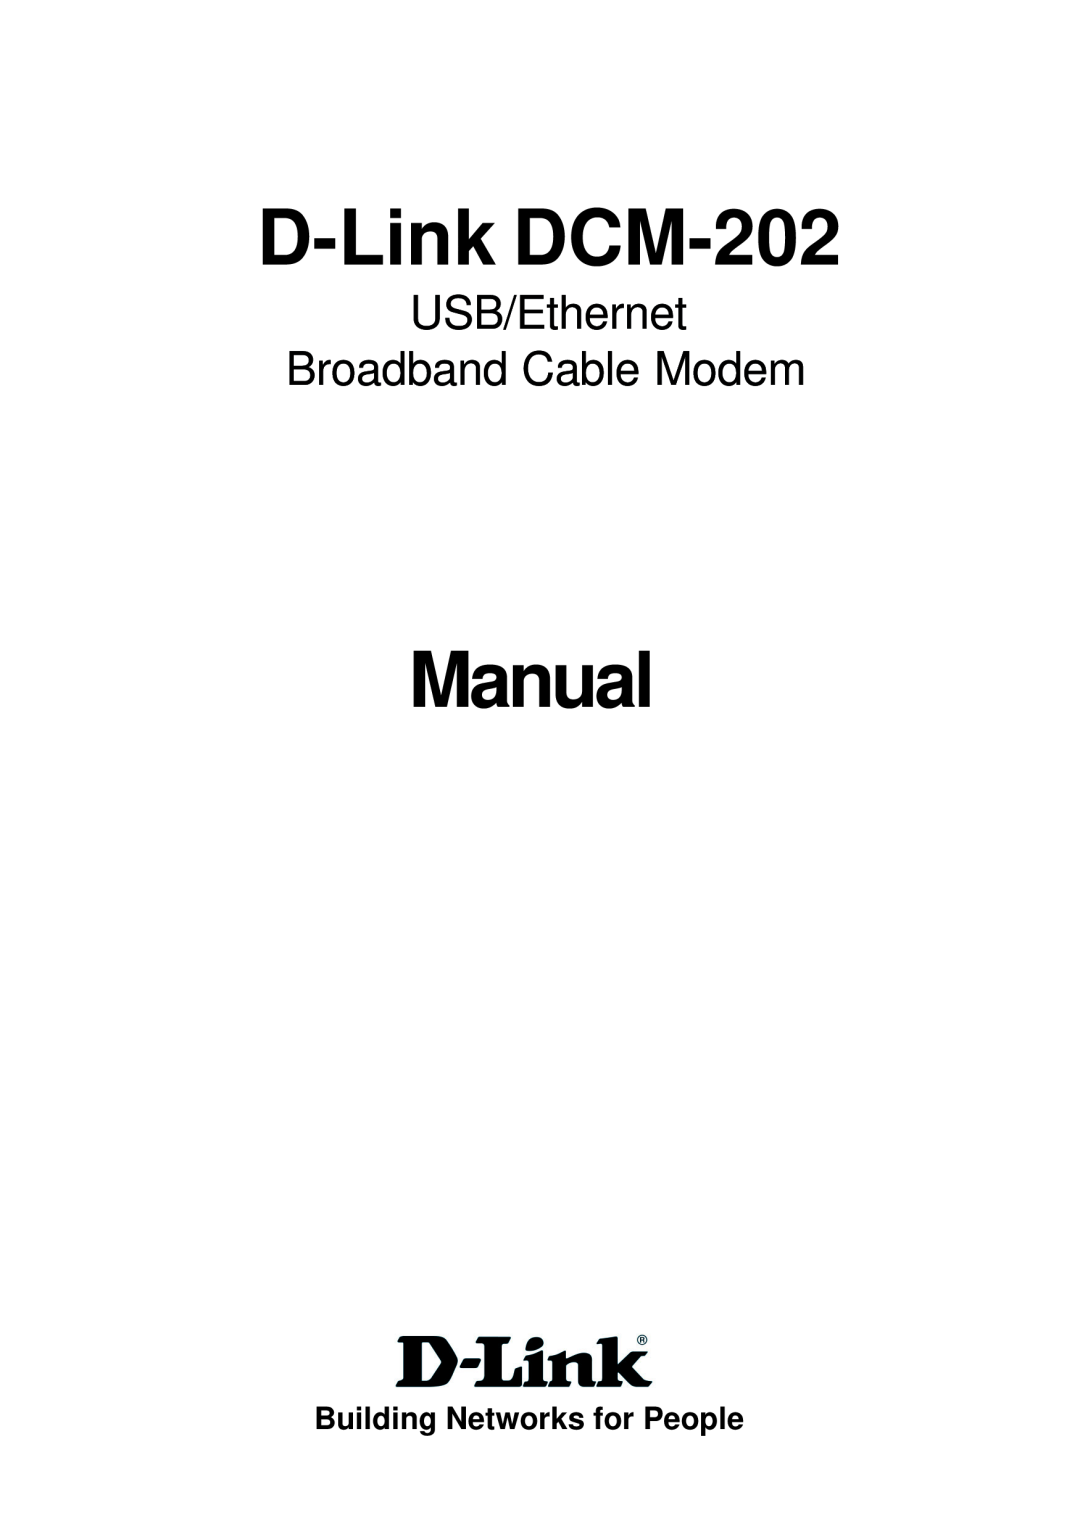 D-Link manual D-Link DCM-202, Manual, USB/Ethernet Broadband Cable Modem, Building Networks for People 